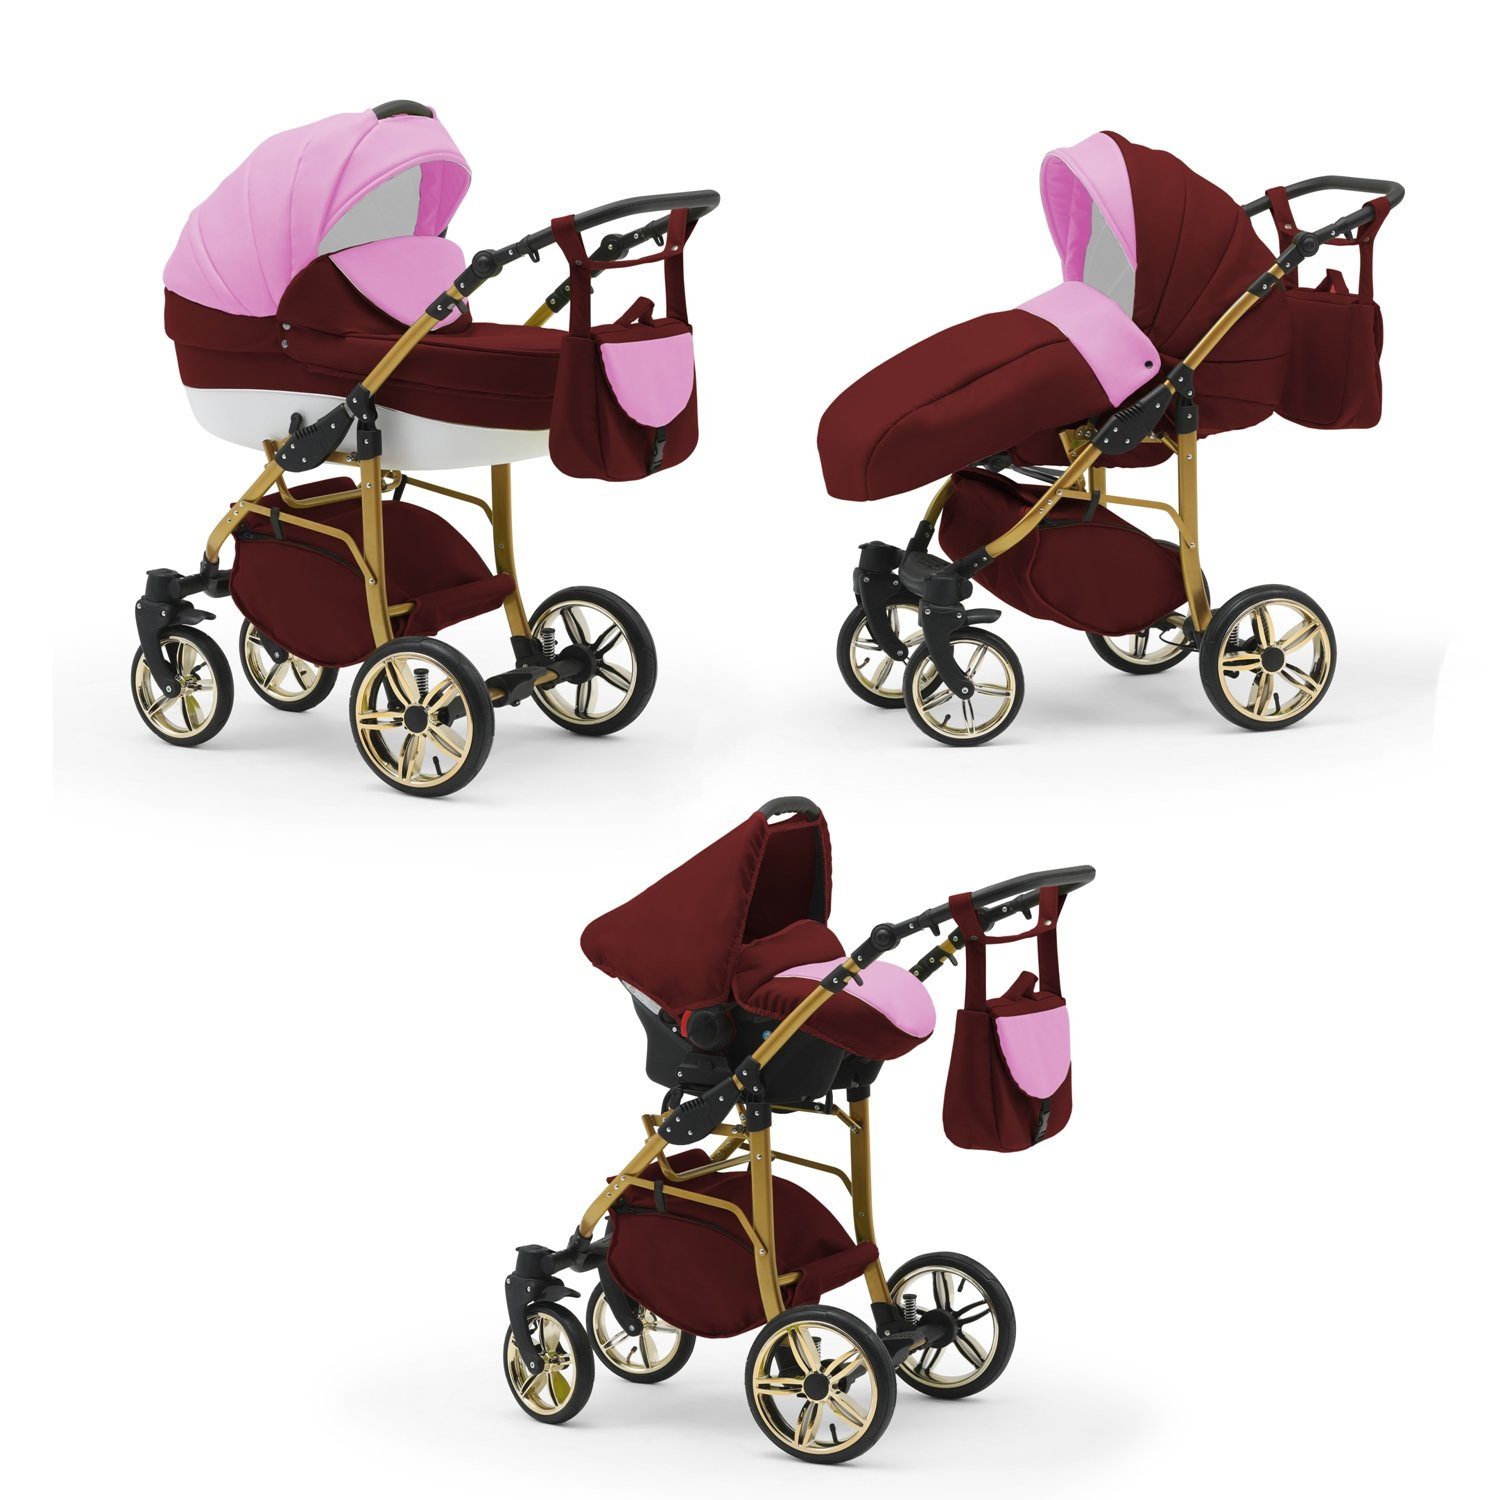 babies-on-wheels 46 1 3 - in Cosmo - Farben Teile Kinderwagen-Set 16 in Rosa-Bordeaux-Weiß ECO Kombi-Kinderwagen Gold